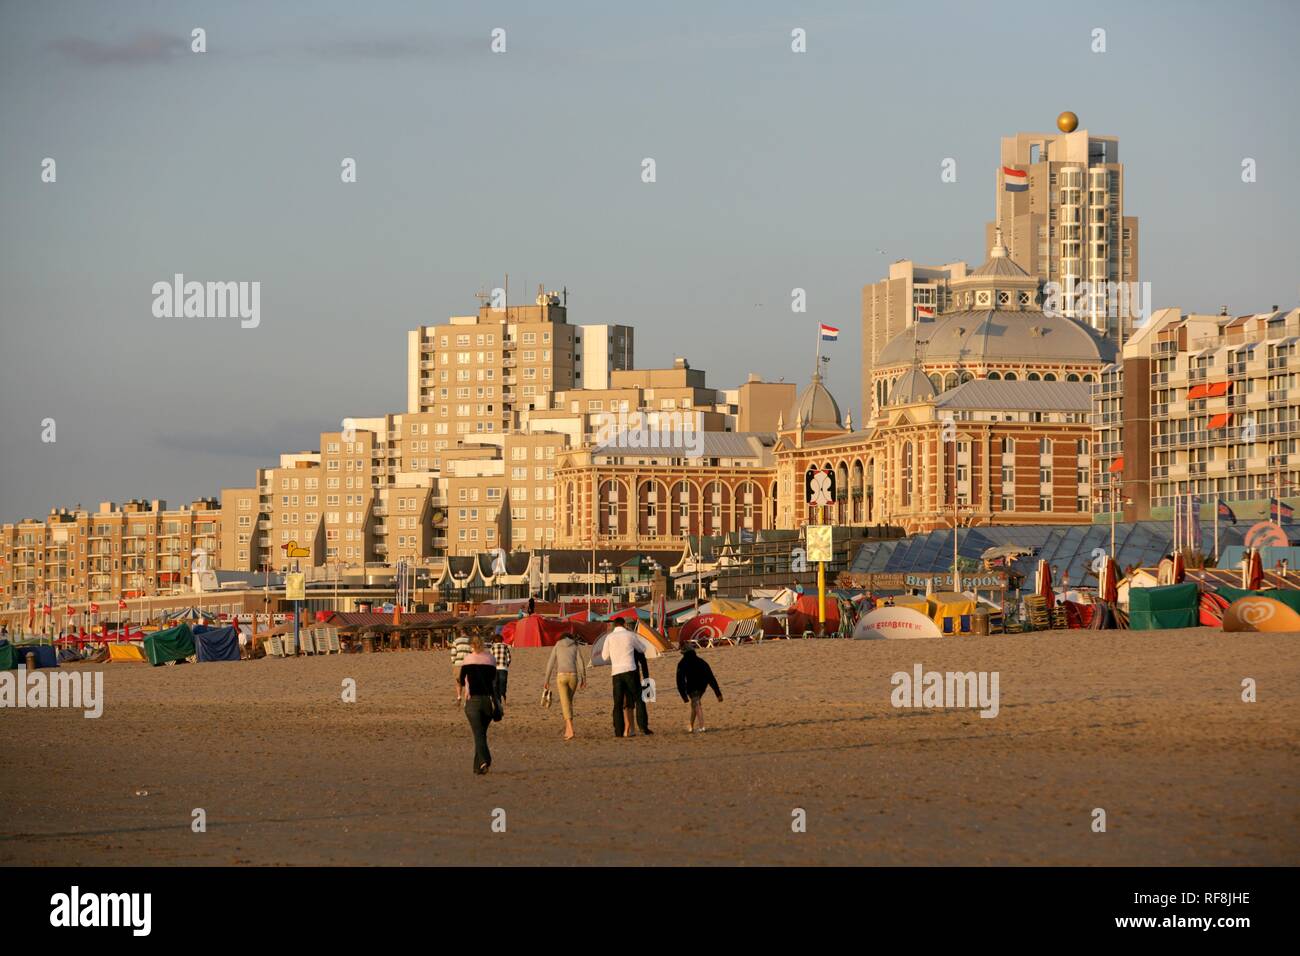 Promenade de la plage et hôtel Kurhaus, Scheveningen, à La Haye, aux Pays-Bas, en Europe Banque D'Images